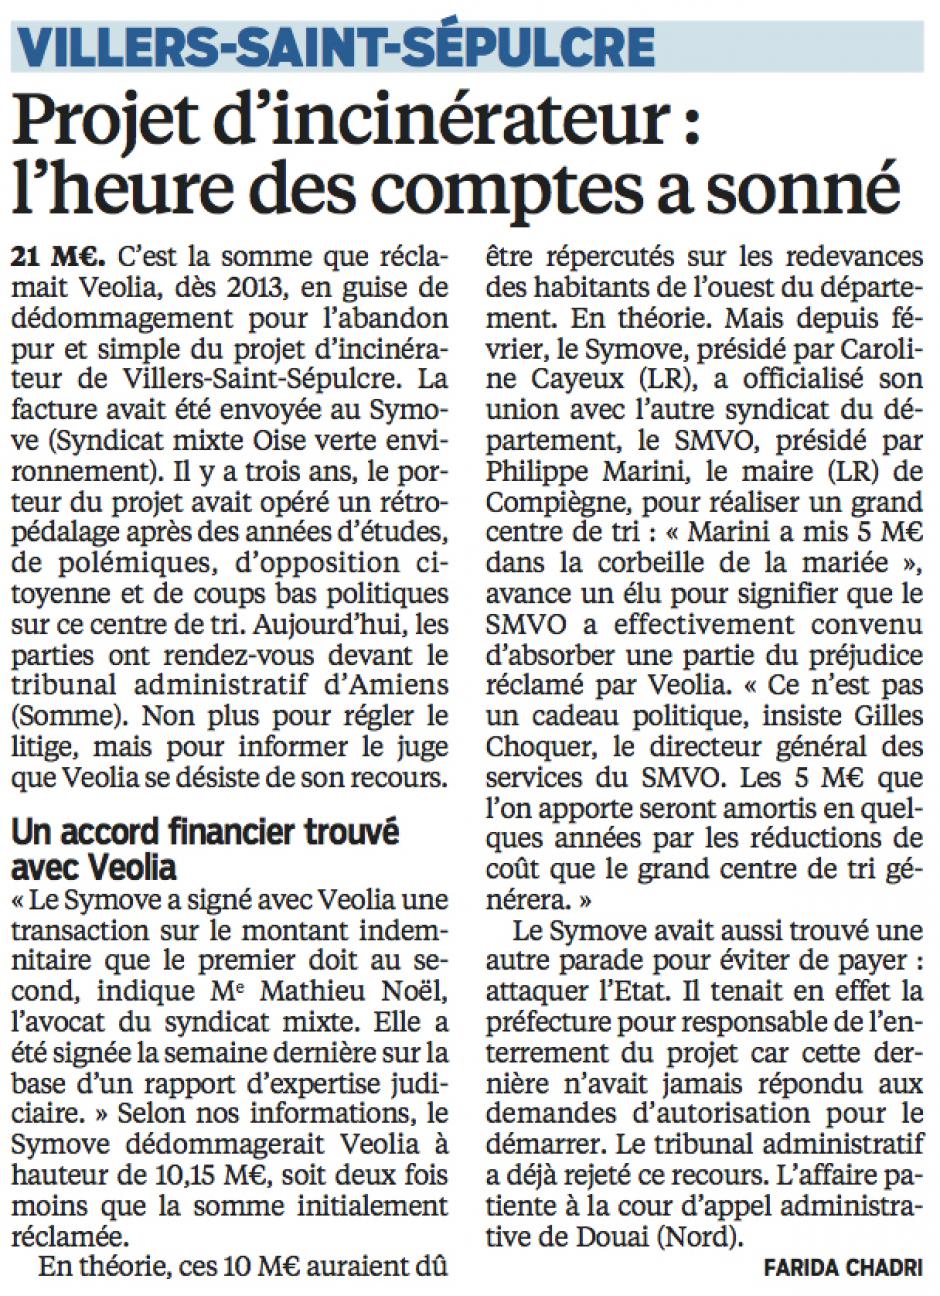 20160614-LeP-Villers-Saint-Sépulcre-Projet d'incinérateur : l'heure des comptes a sonné